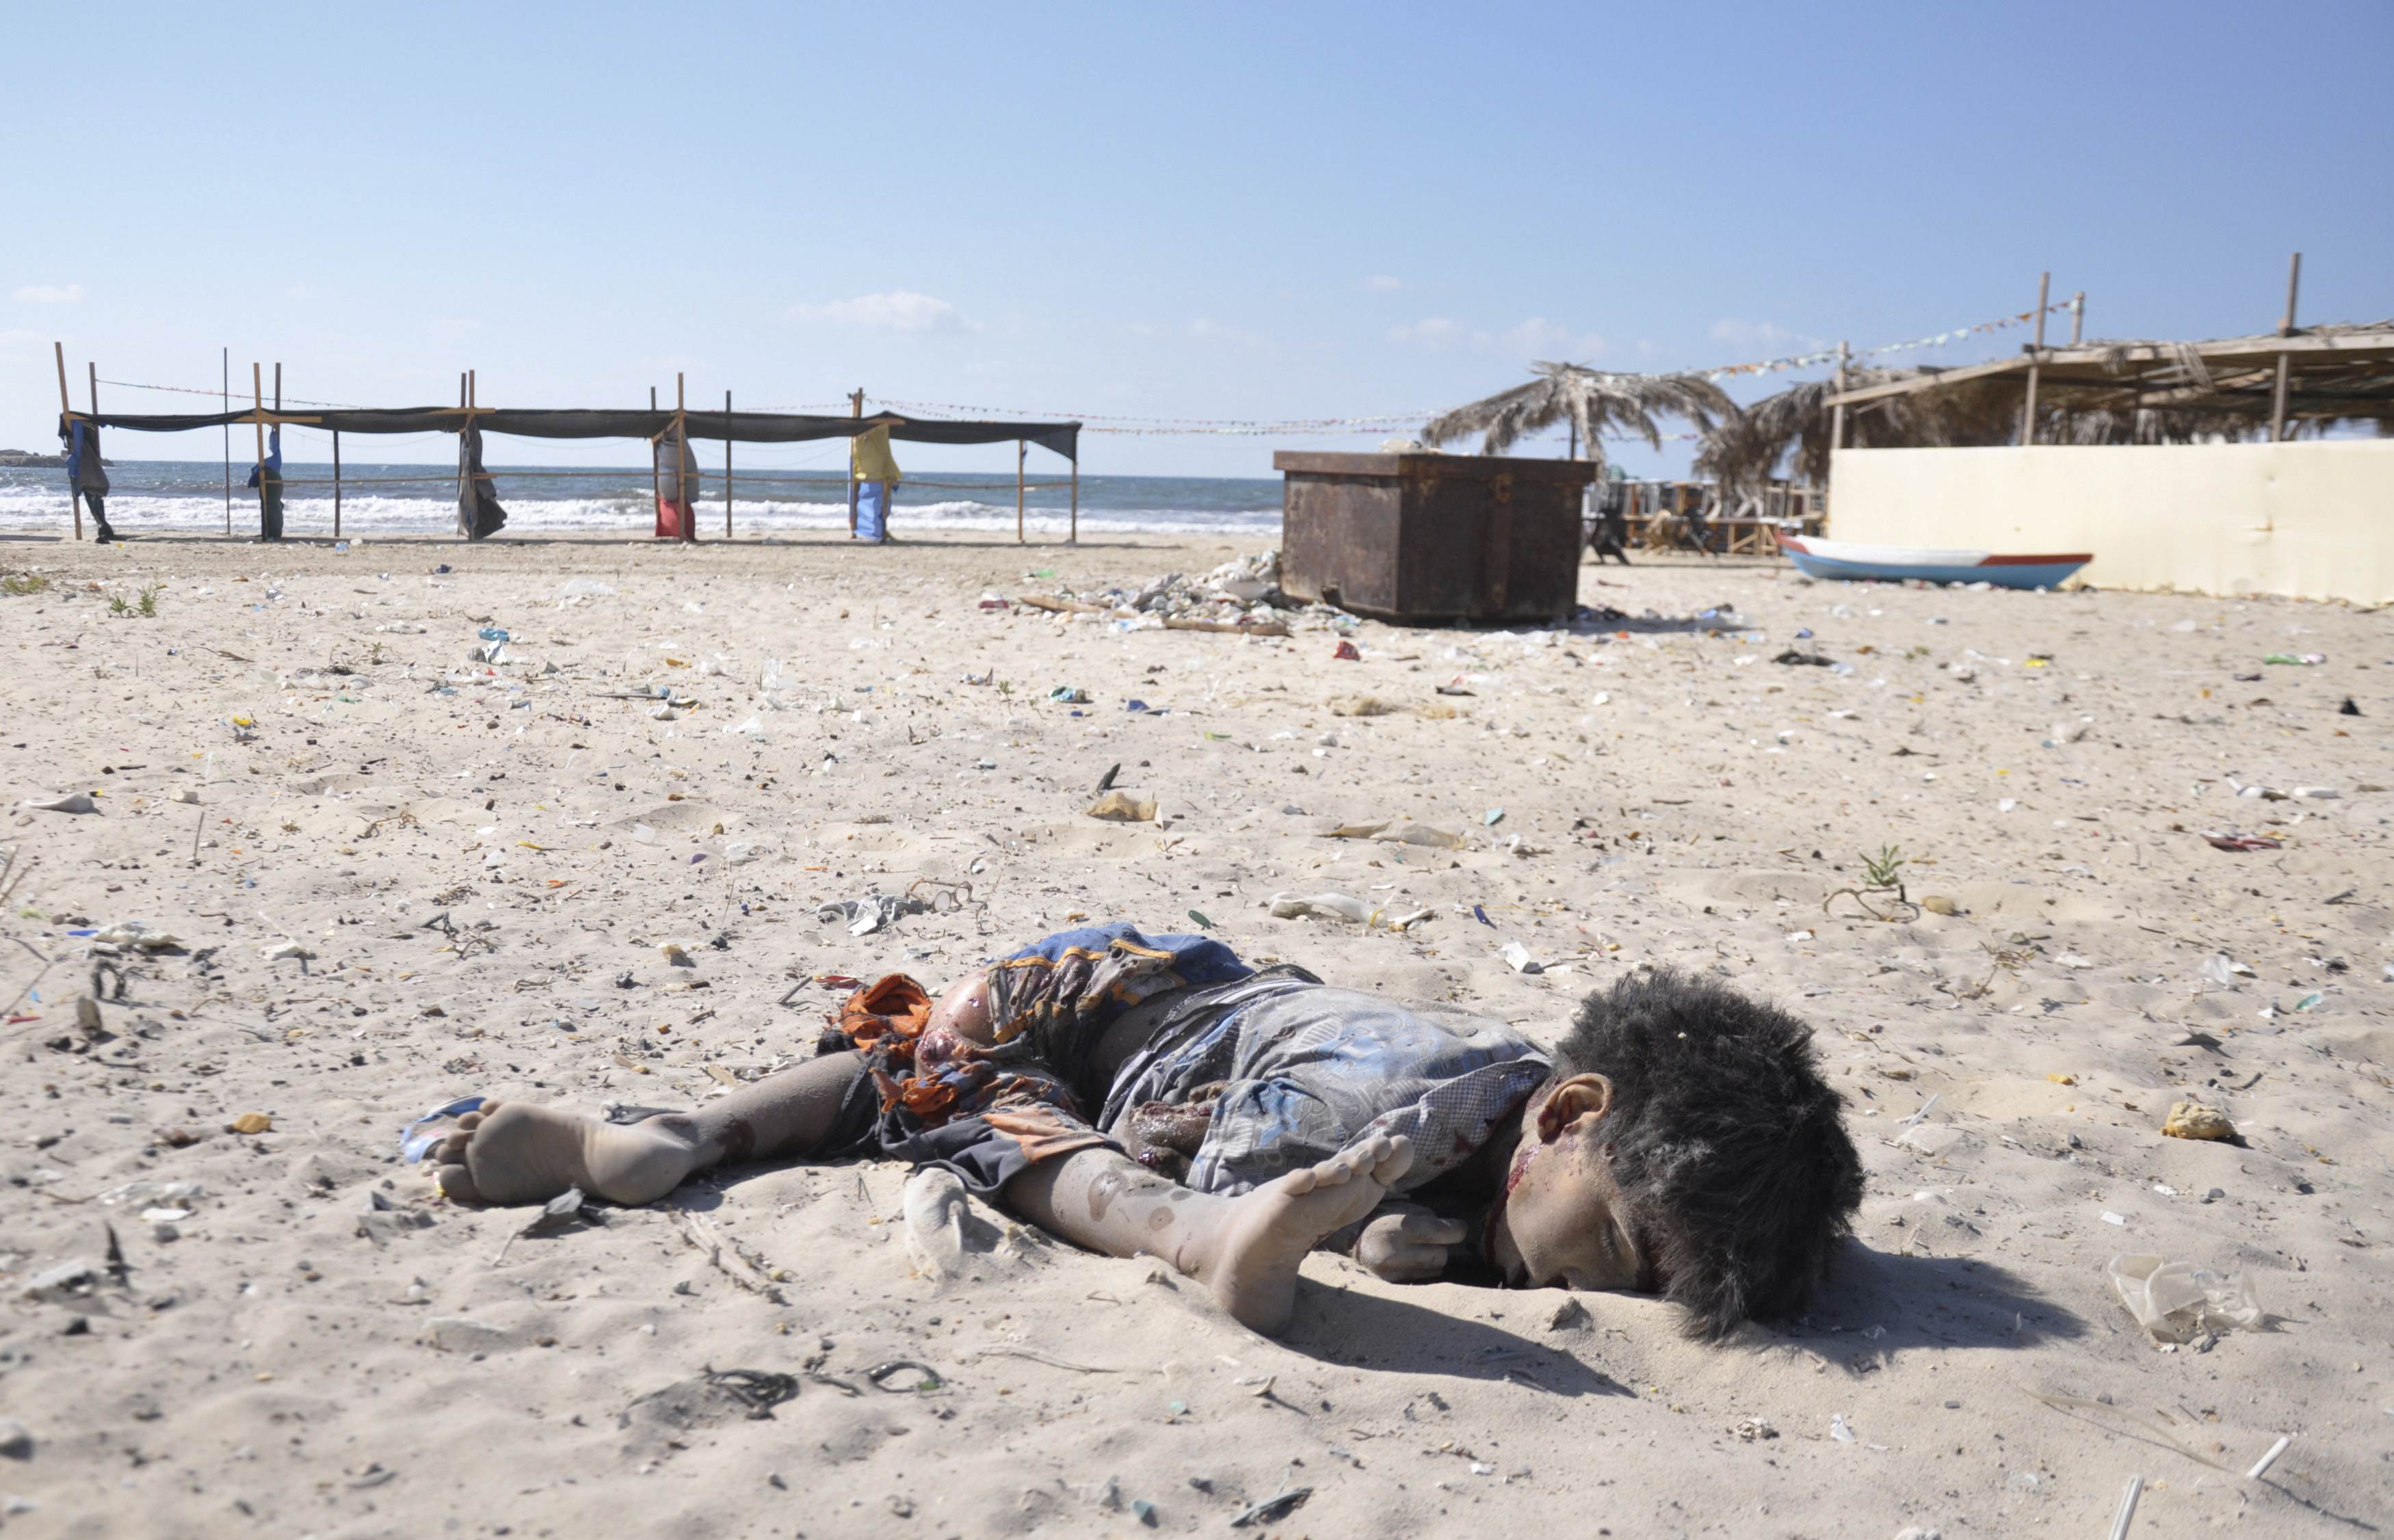 Θρήνος για 4 παιδιά που σκοτώθηκαν στην παραλία της Γάζας, ενώ έπαιζαν ποδόσφαιρο! (ΦΩΤΟ)